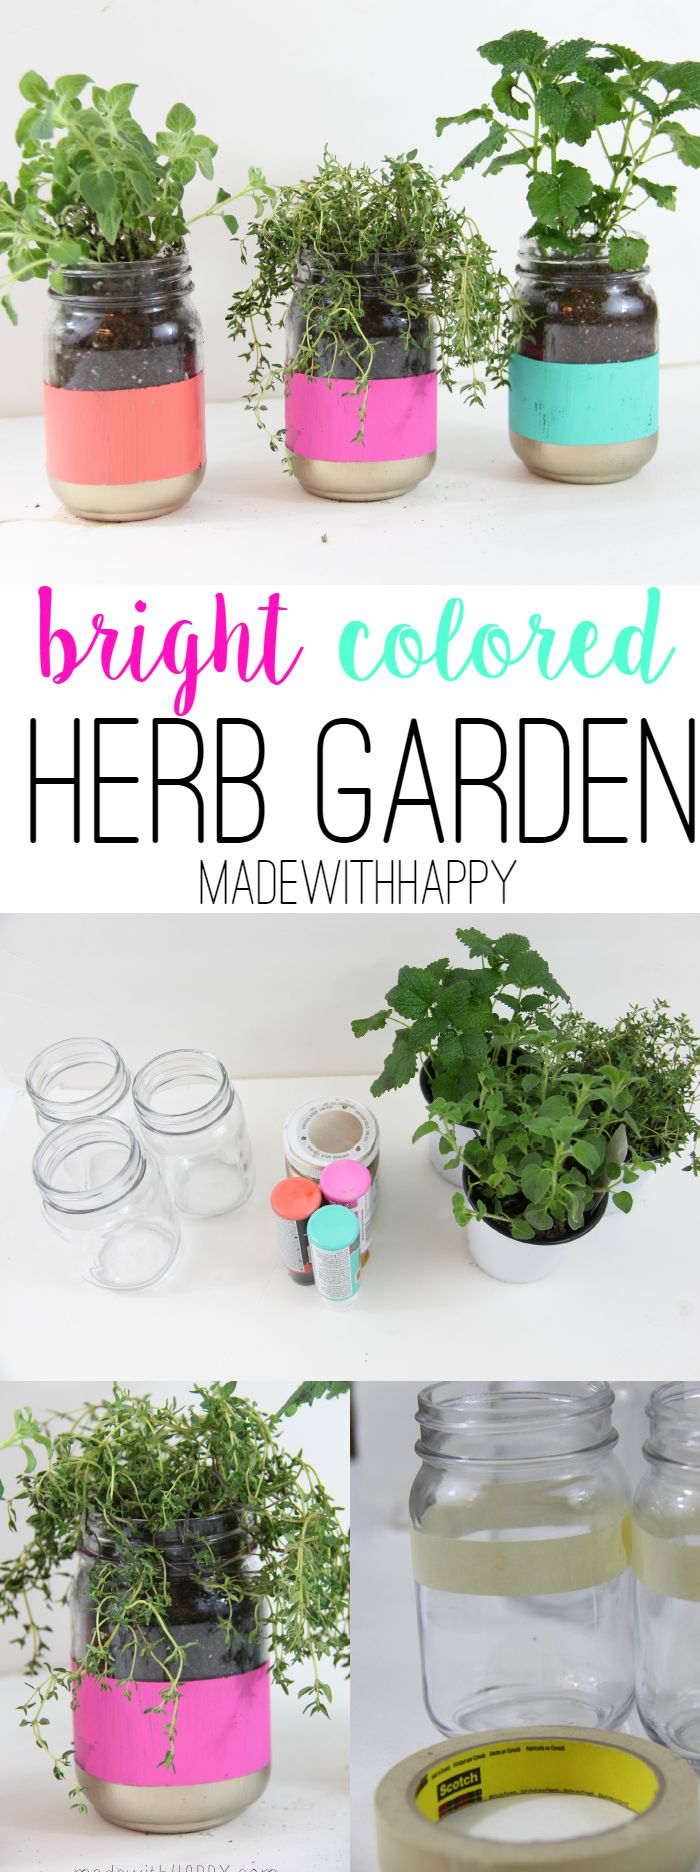 Bright Colored Herb Garden - Mason Jar Crafts - Easy Pop of Color - Spring Garde...